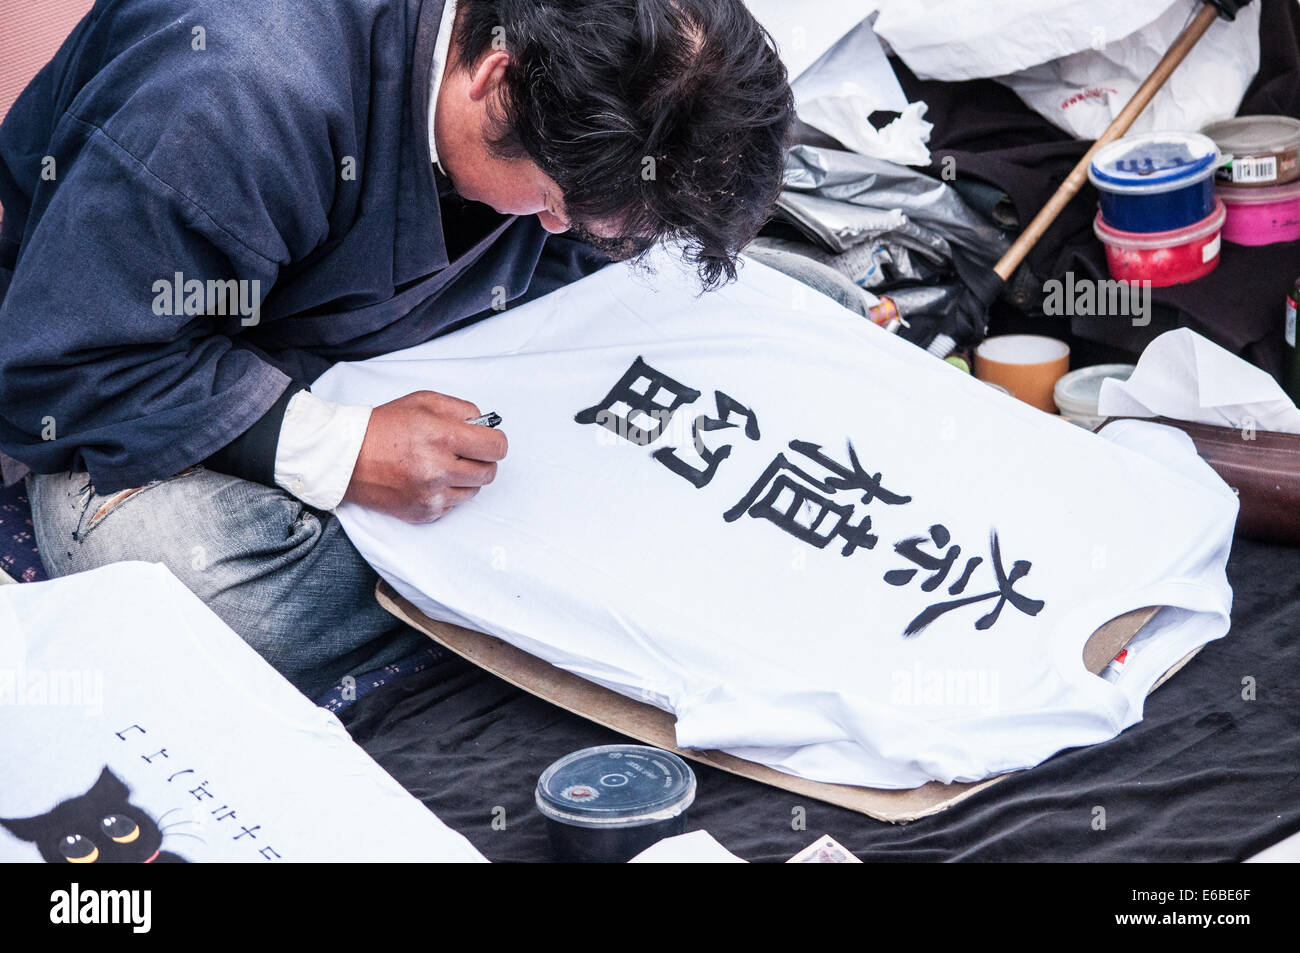 L'écriture japonaise sur shirt Banque D'Images